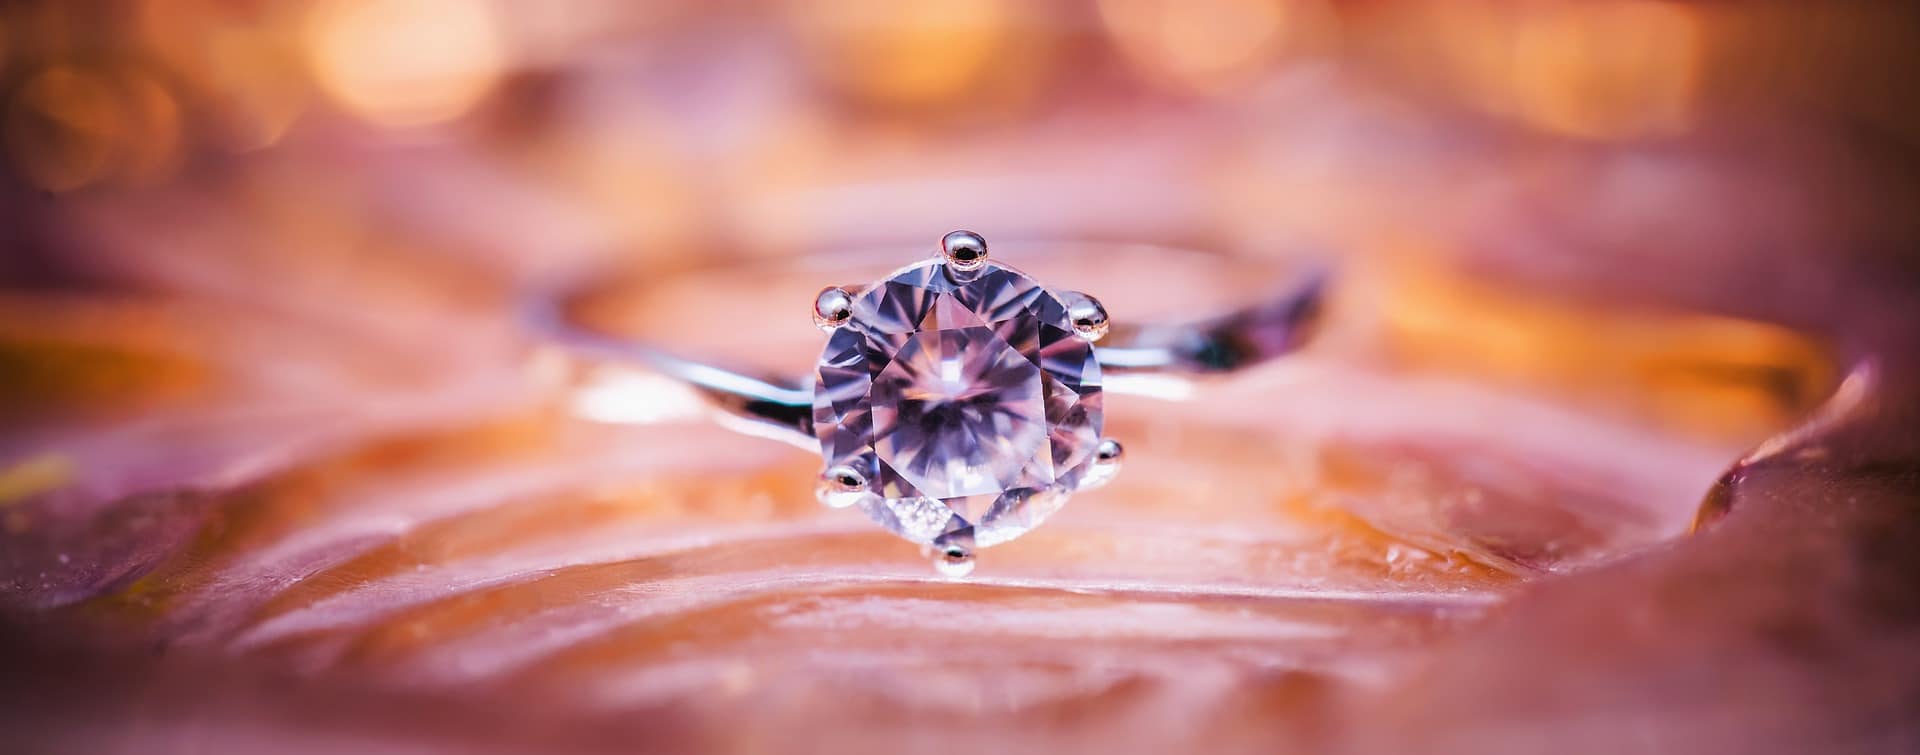 다이아몬드 보석 벽지,반지,약혼 반지,다이아몬드,분홍,매크로 사진